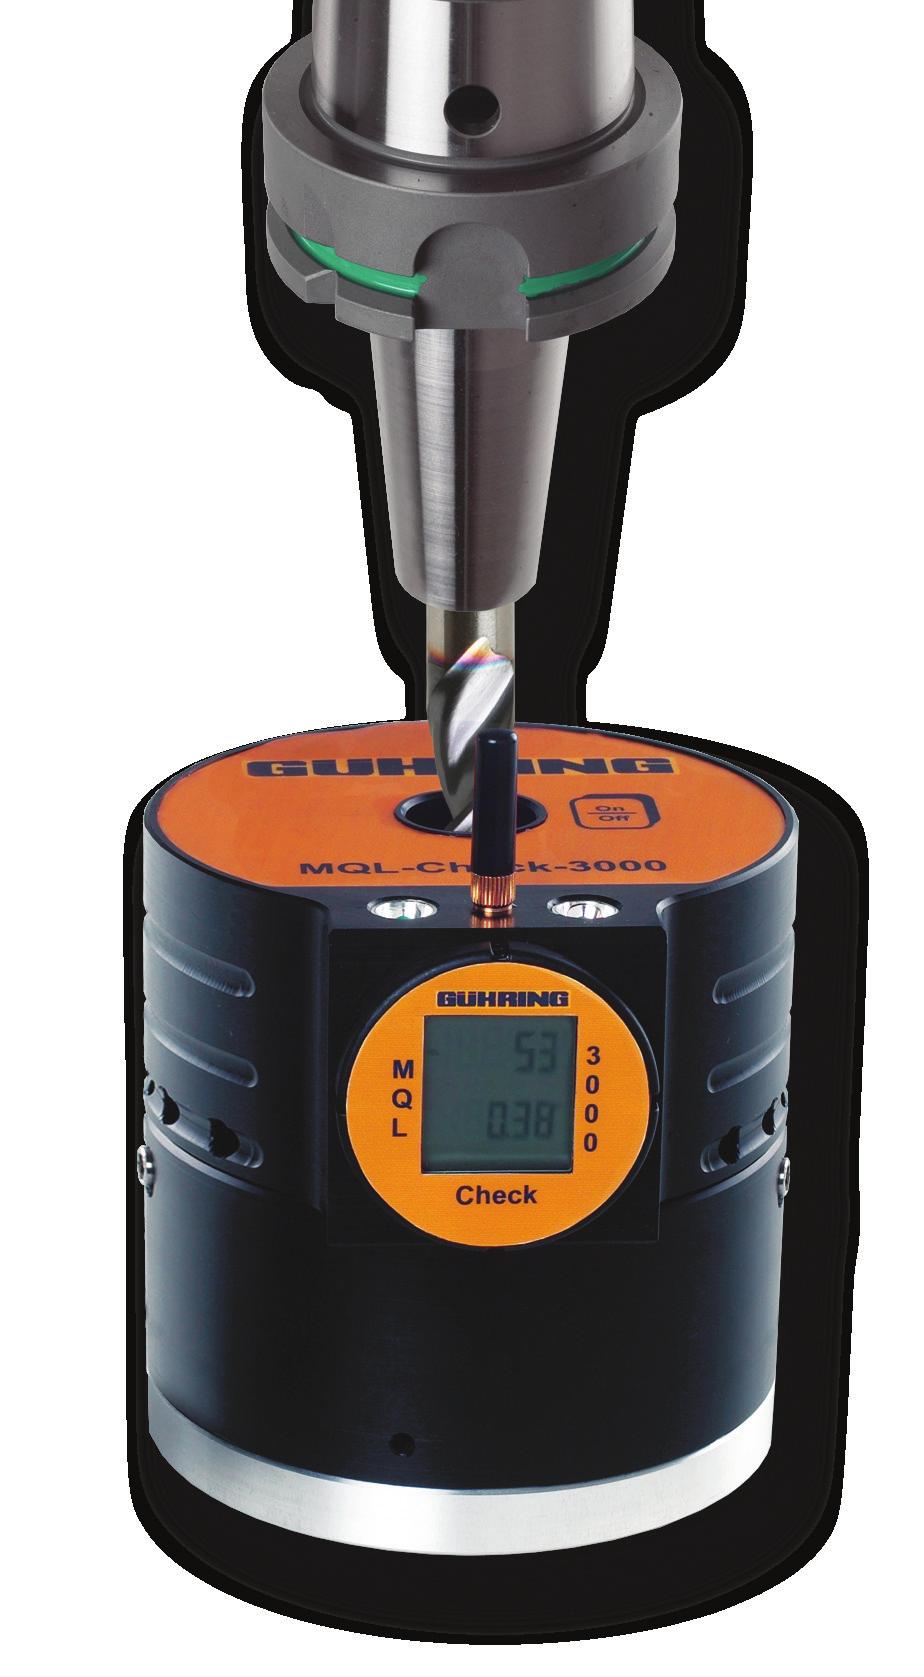 MQL-Check 3000 verschafft ÜbERbLIck Gerade bei der Minimalmengenschmierung kot es auf die optimale Zuführung der sehr geringen Schmierstoffmengen zur Werkzeugschneide an.